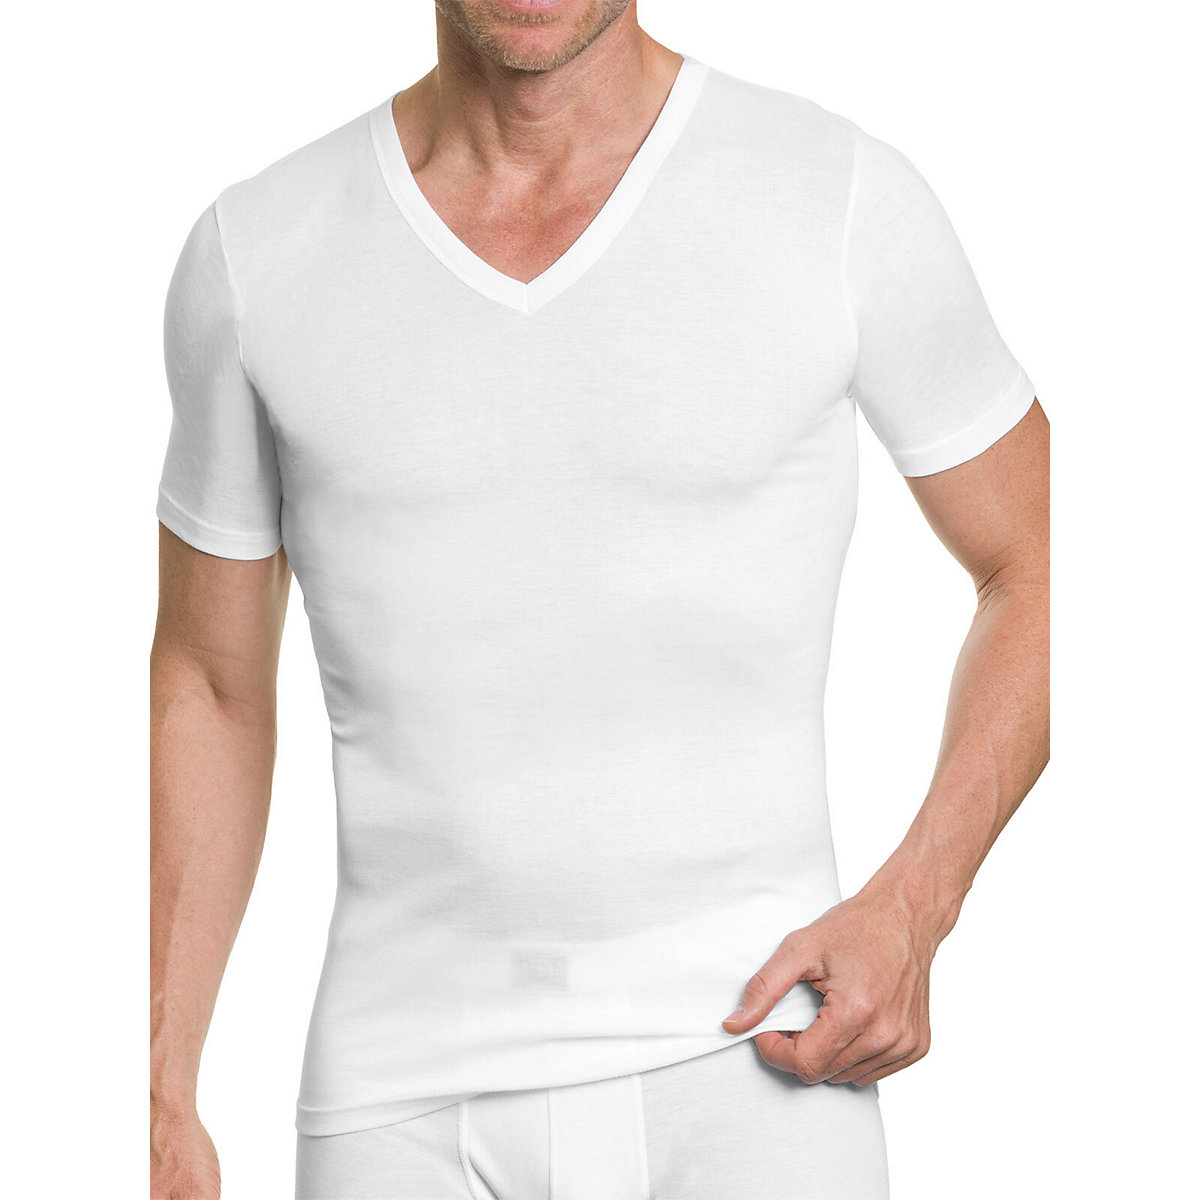 Kumpf Body Fashion 4er Sparpack Herren T-Shirt Masterclass Unterhemden weiß